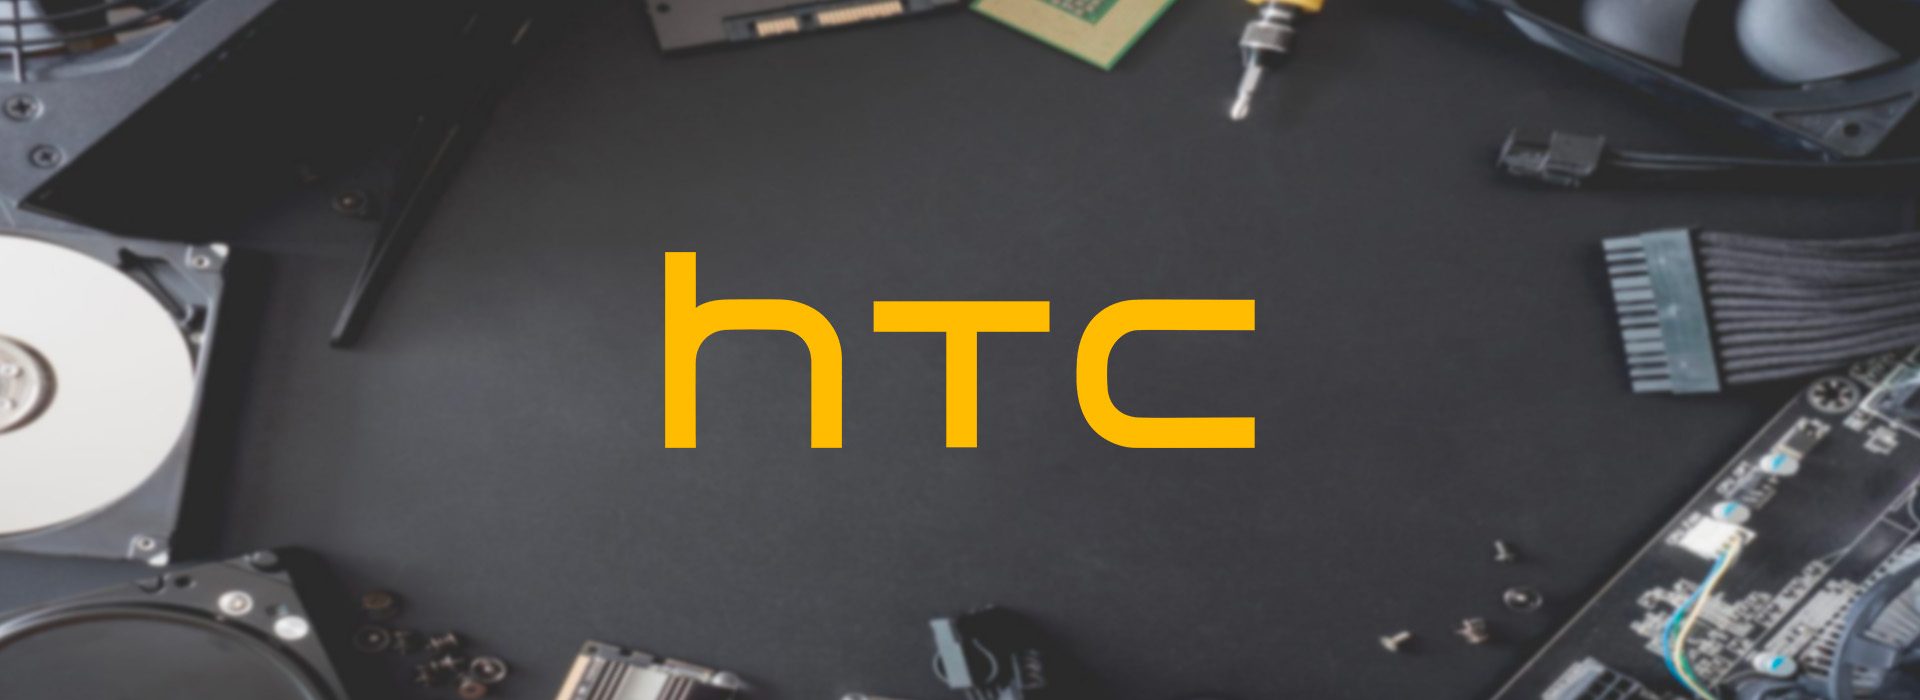 HTC-header-2.jpg